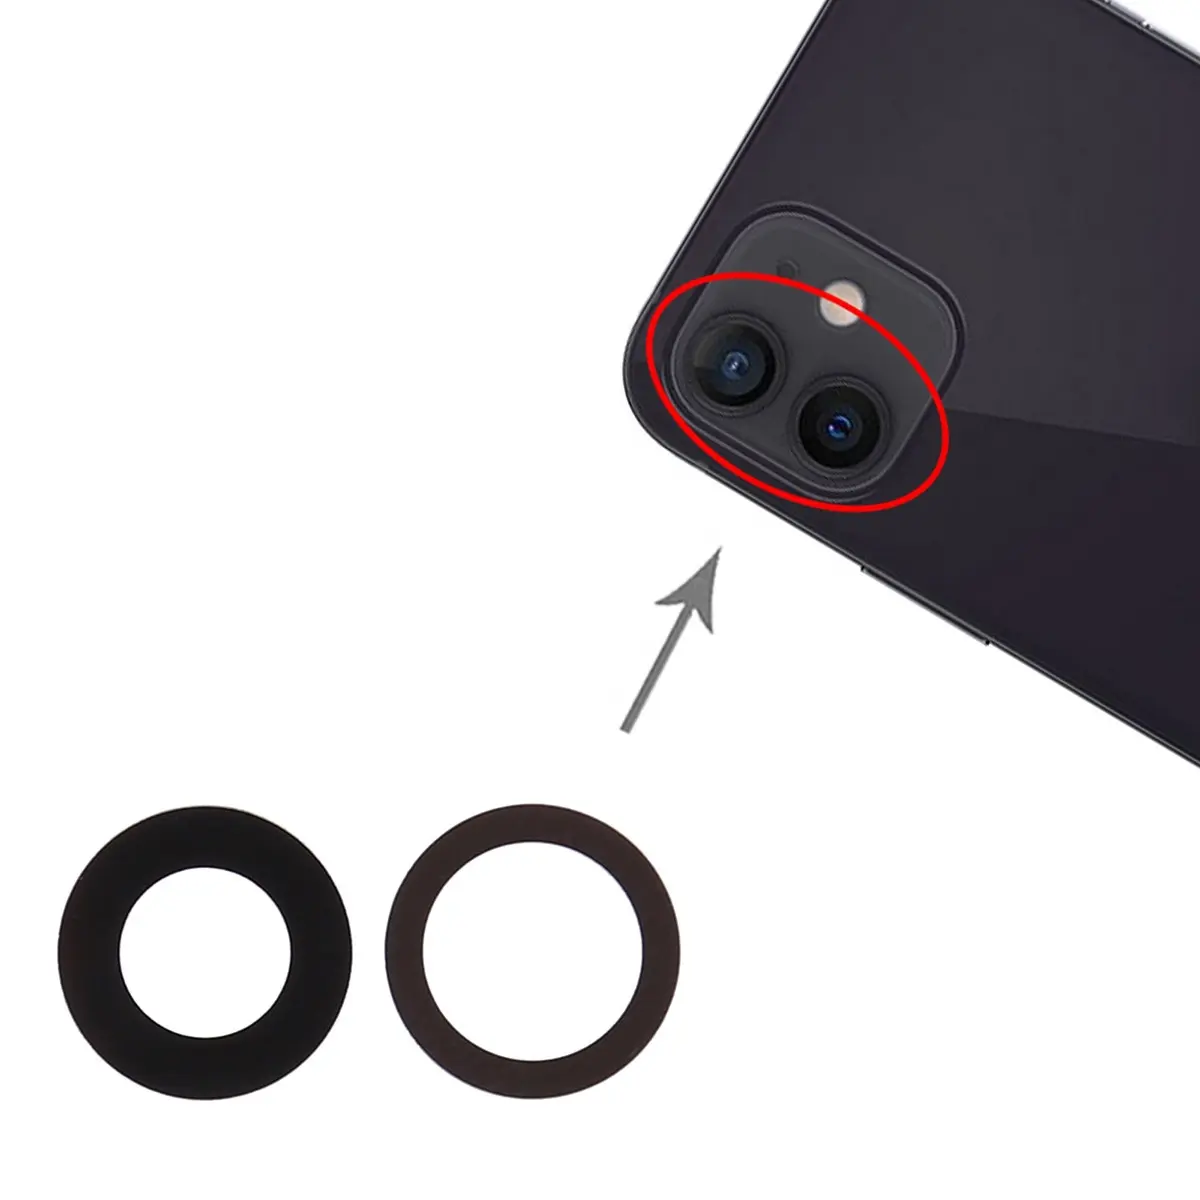 दो तरफा टेप के साथ iPhone 11/11 प्रो मैक्स के लिए 100% असली मूल नया बैक कैमरा लेंस रिप्लेसमेंट रियर कैमरा ग्लास